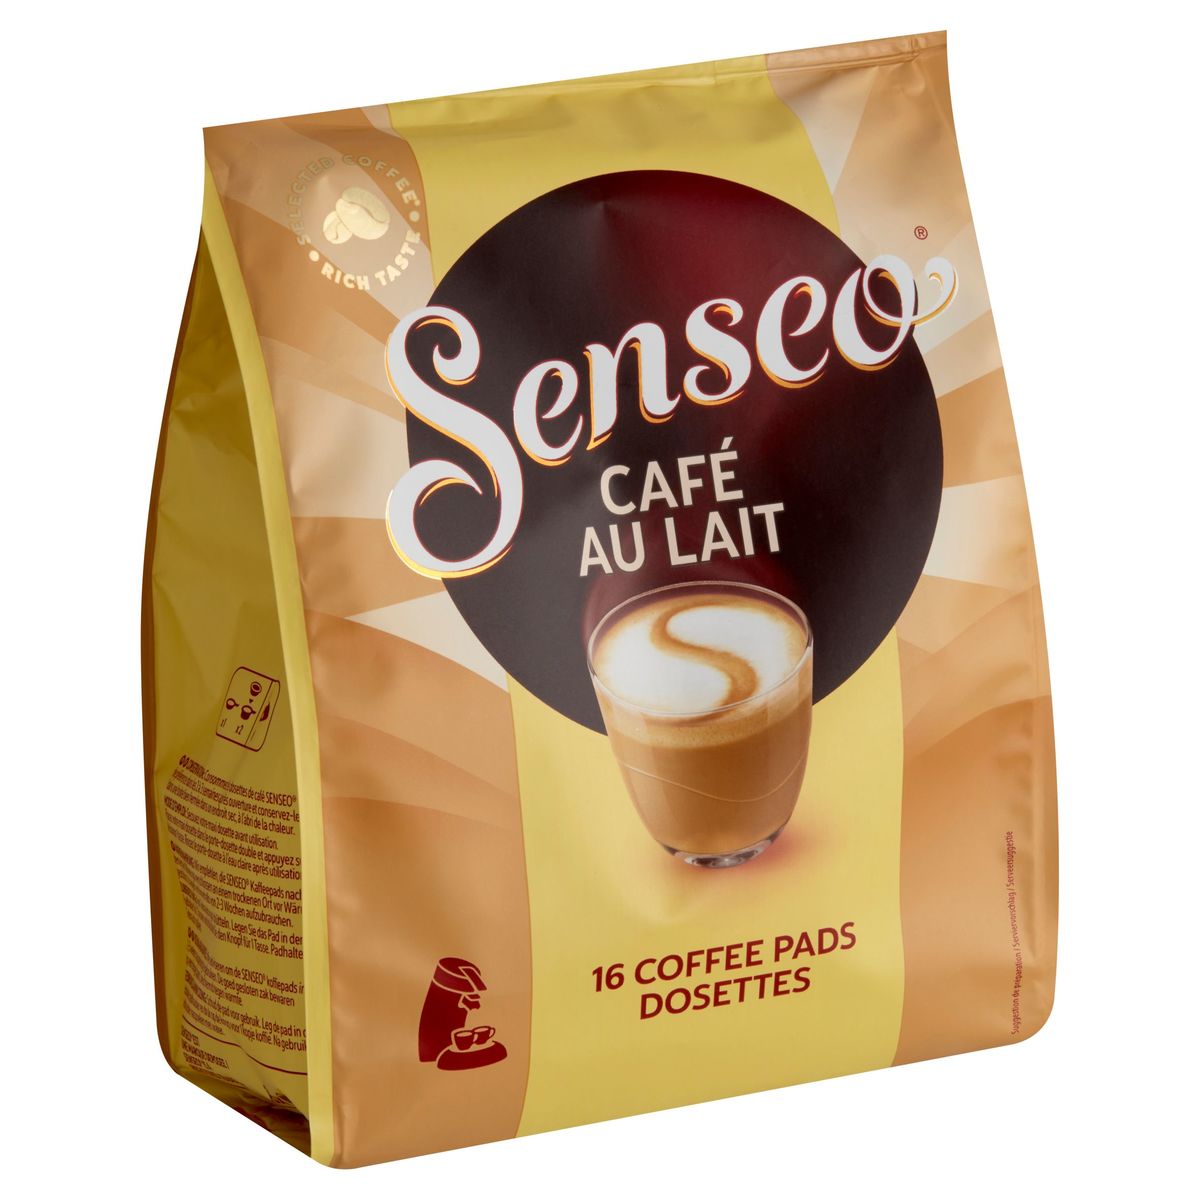 Senseo Café au Lait 16 Coffee Pads 168 g